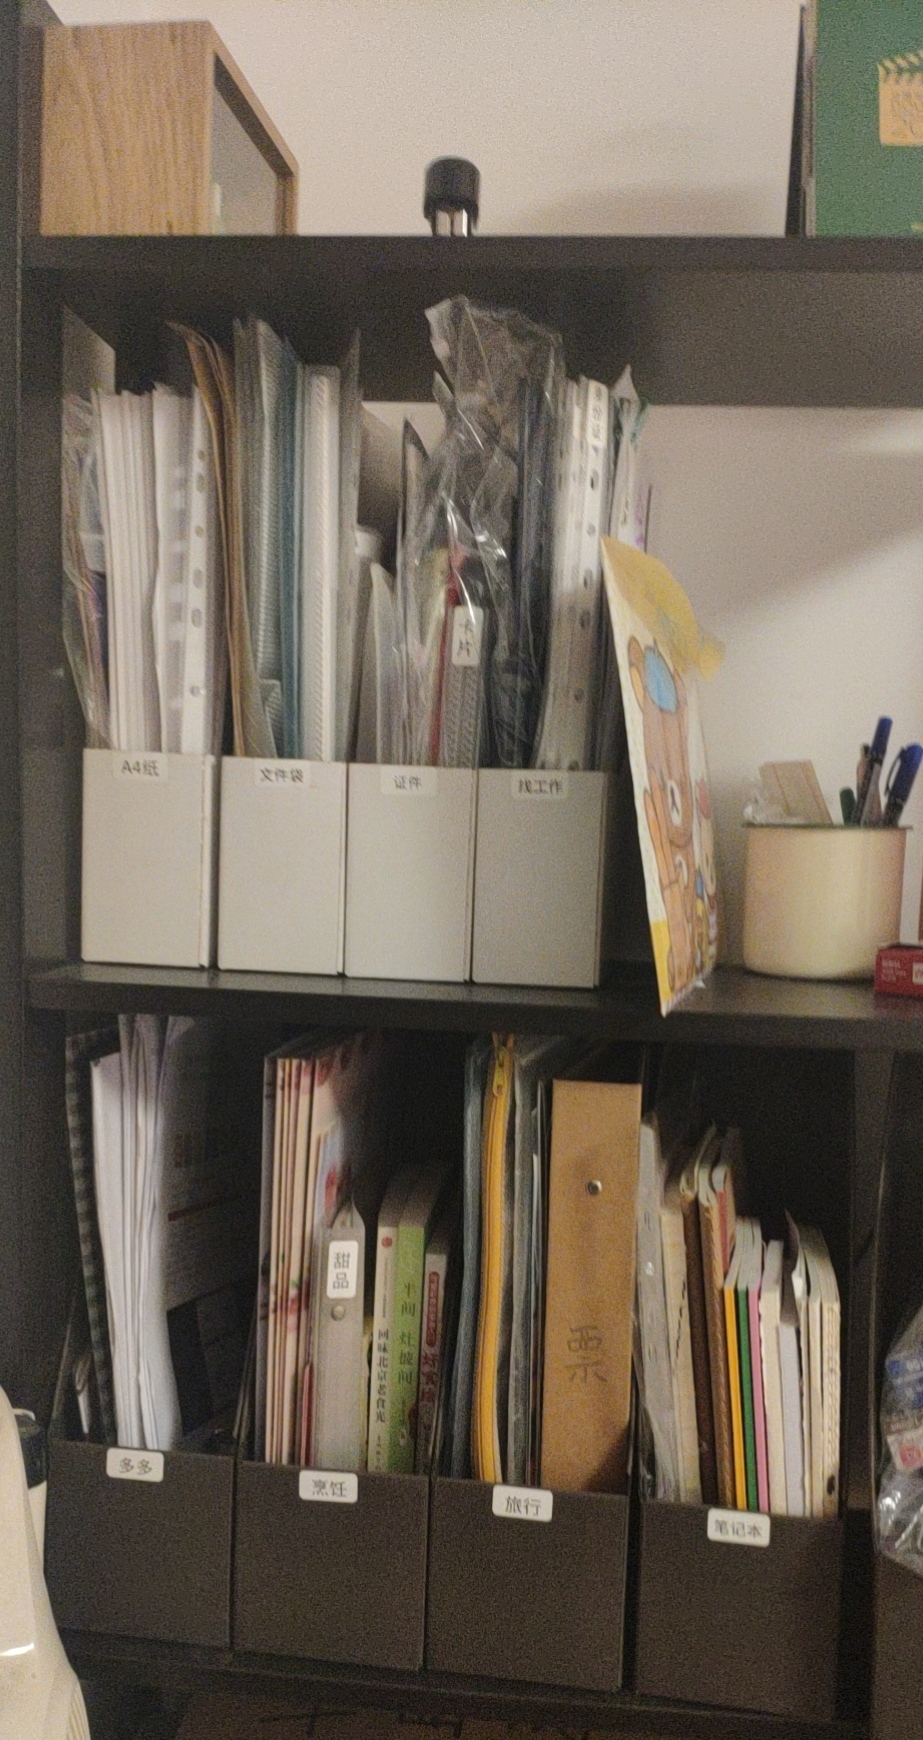 how to organize a bookshelf